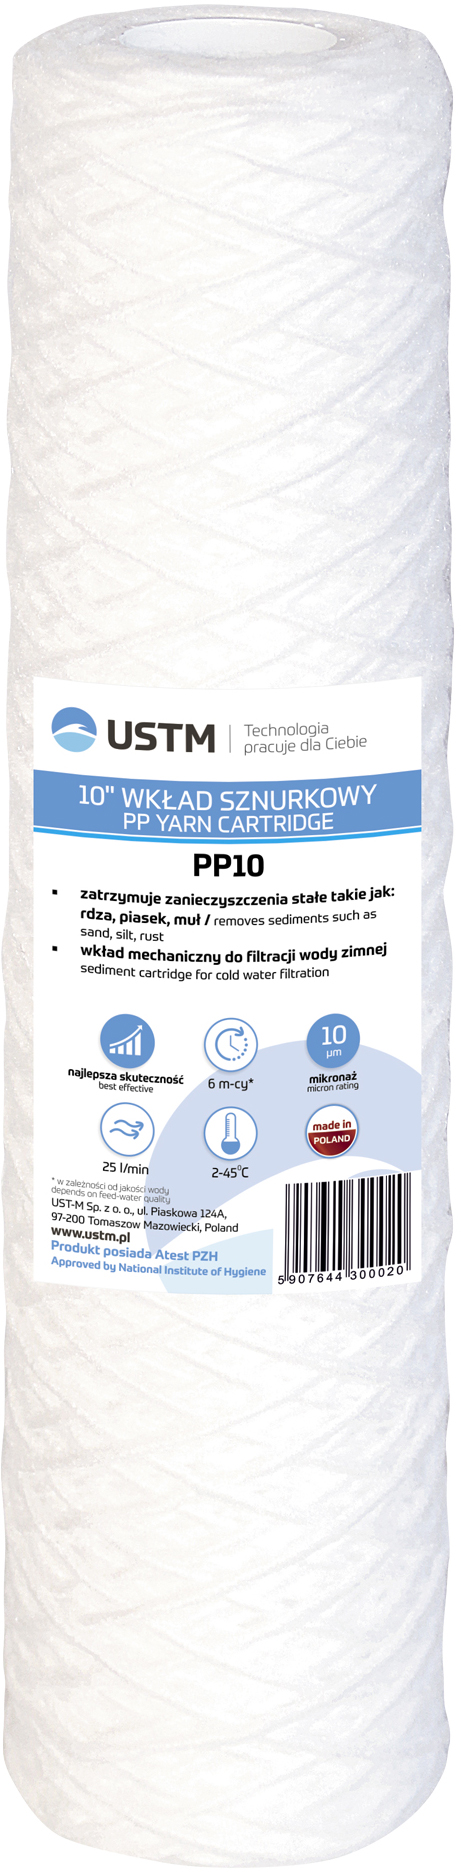 USTM PP10